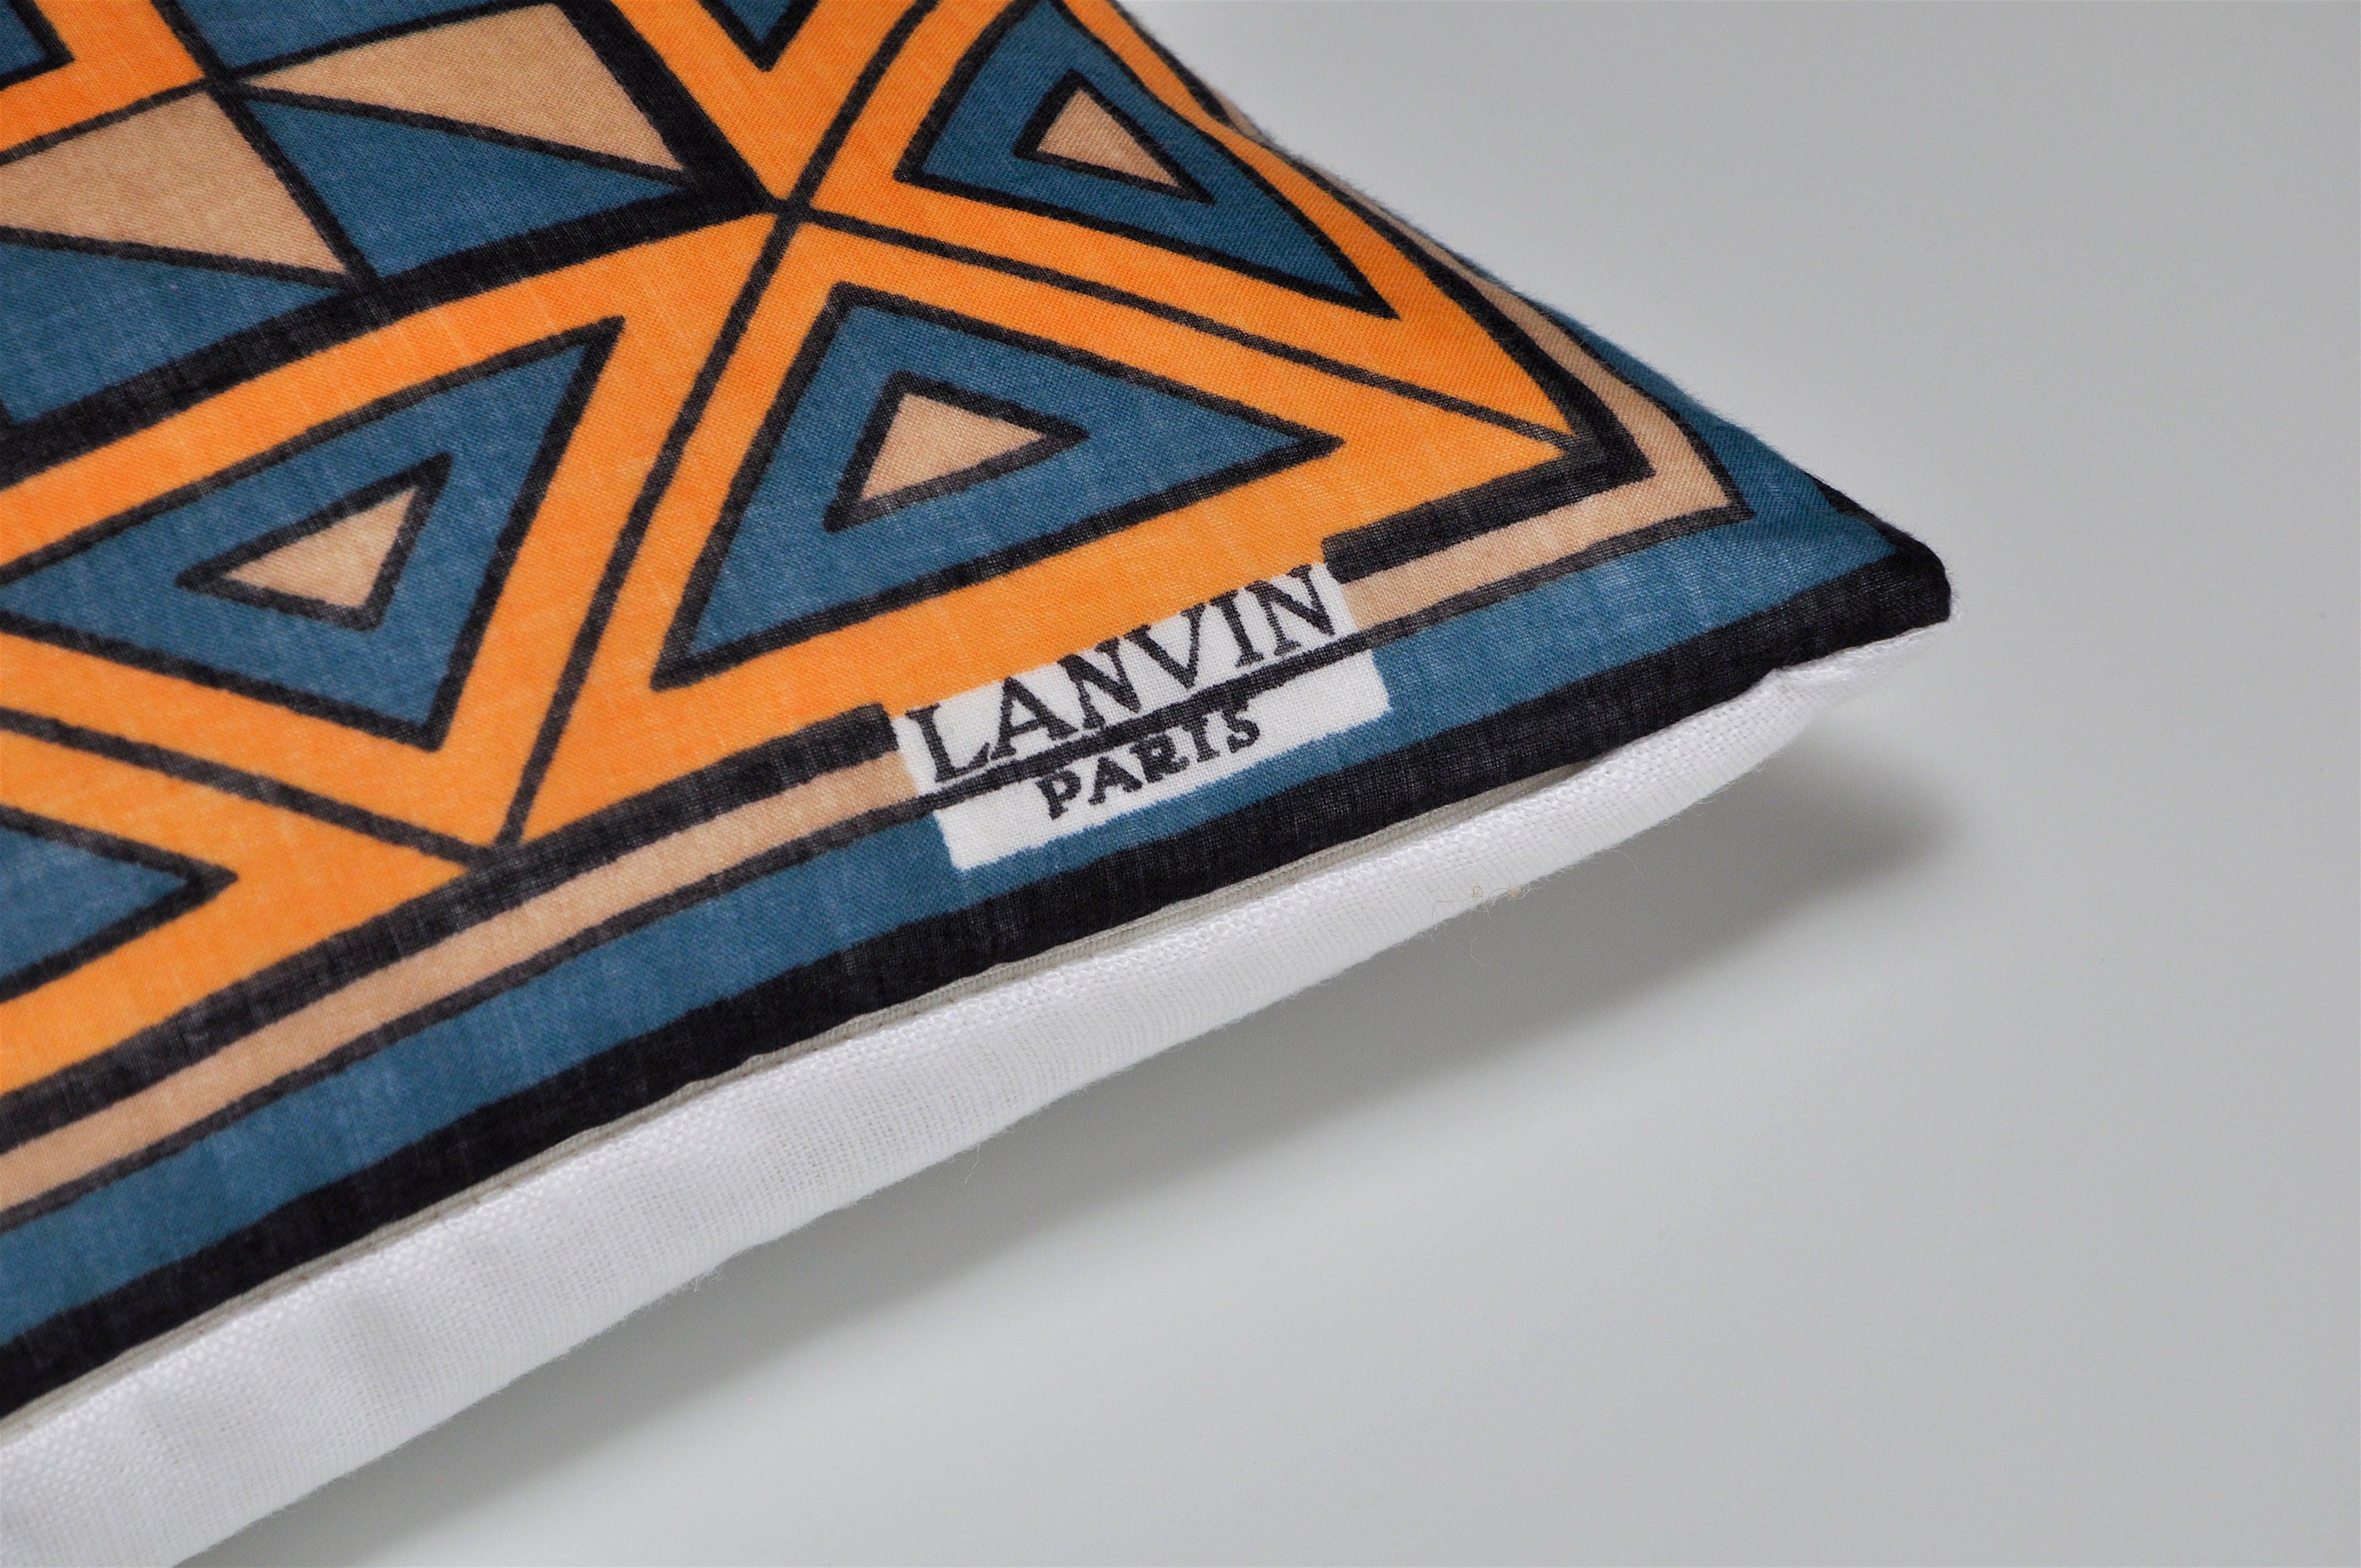 Maßgeschneidertes Luxuskissen aus einem exquisiten alten Lanvin-Schal mit geometrischem Muster in Orange und Blau. Ein äußerst einzigartiger Fund von einem Pariser Antiquitätenmarkt und ein sehr ungewöhnliches Beispiel für ein Stück von Lanvin, mit